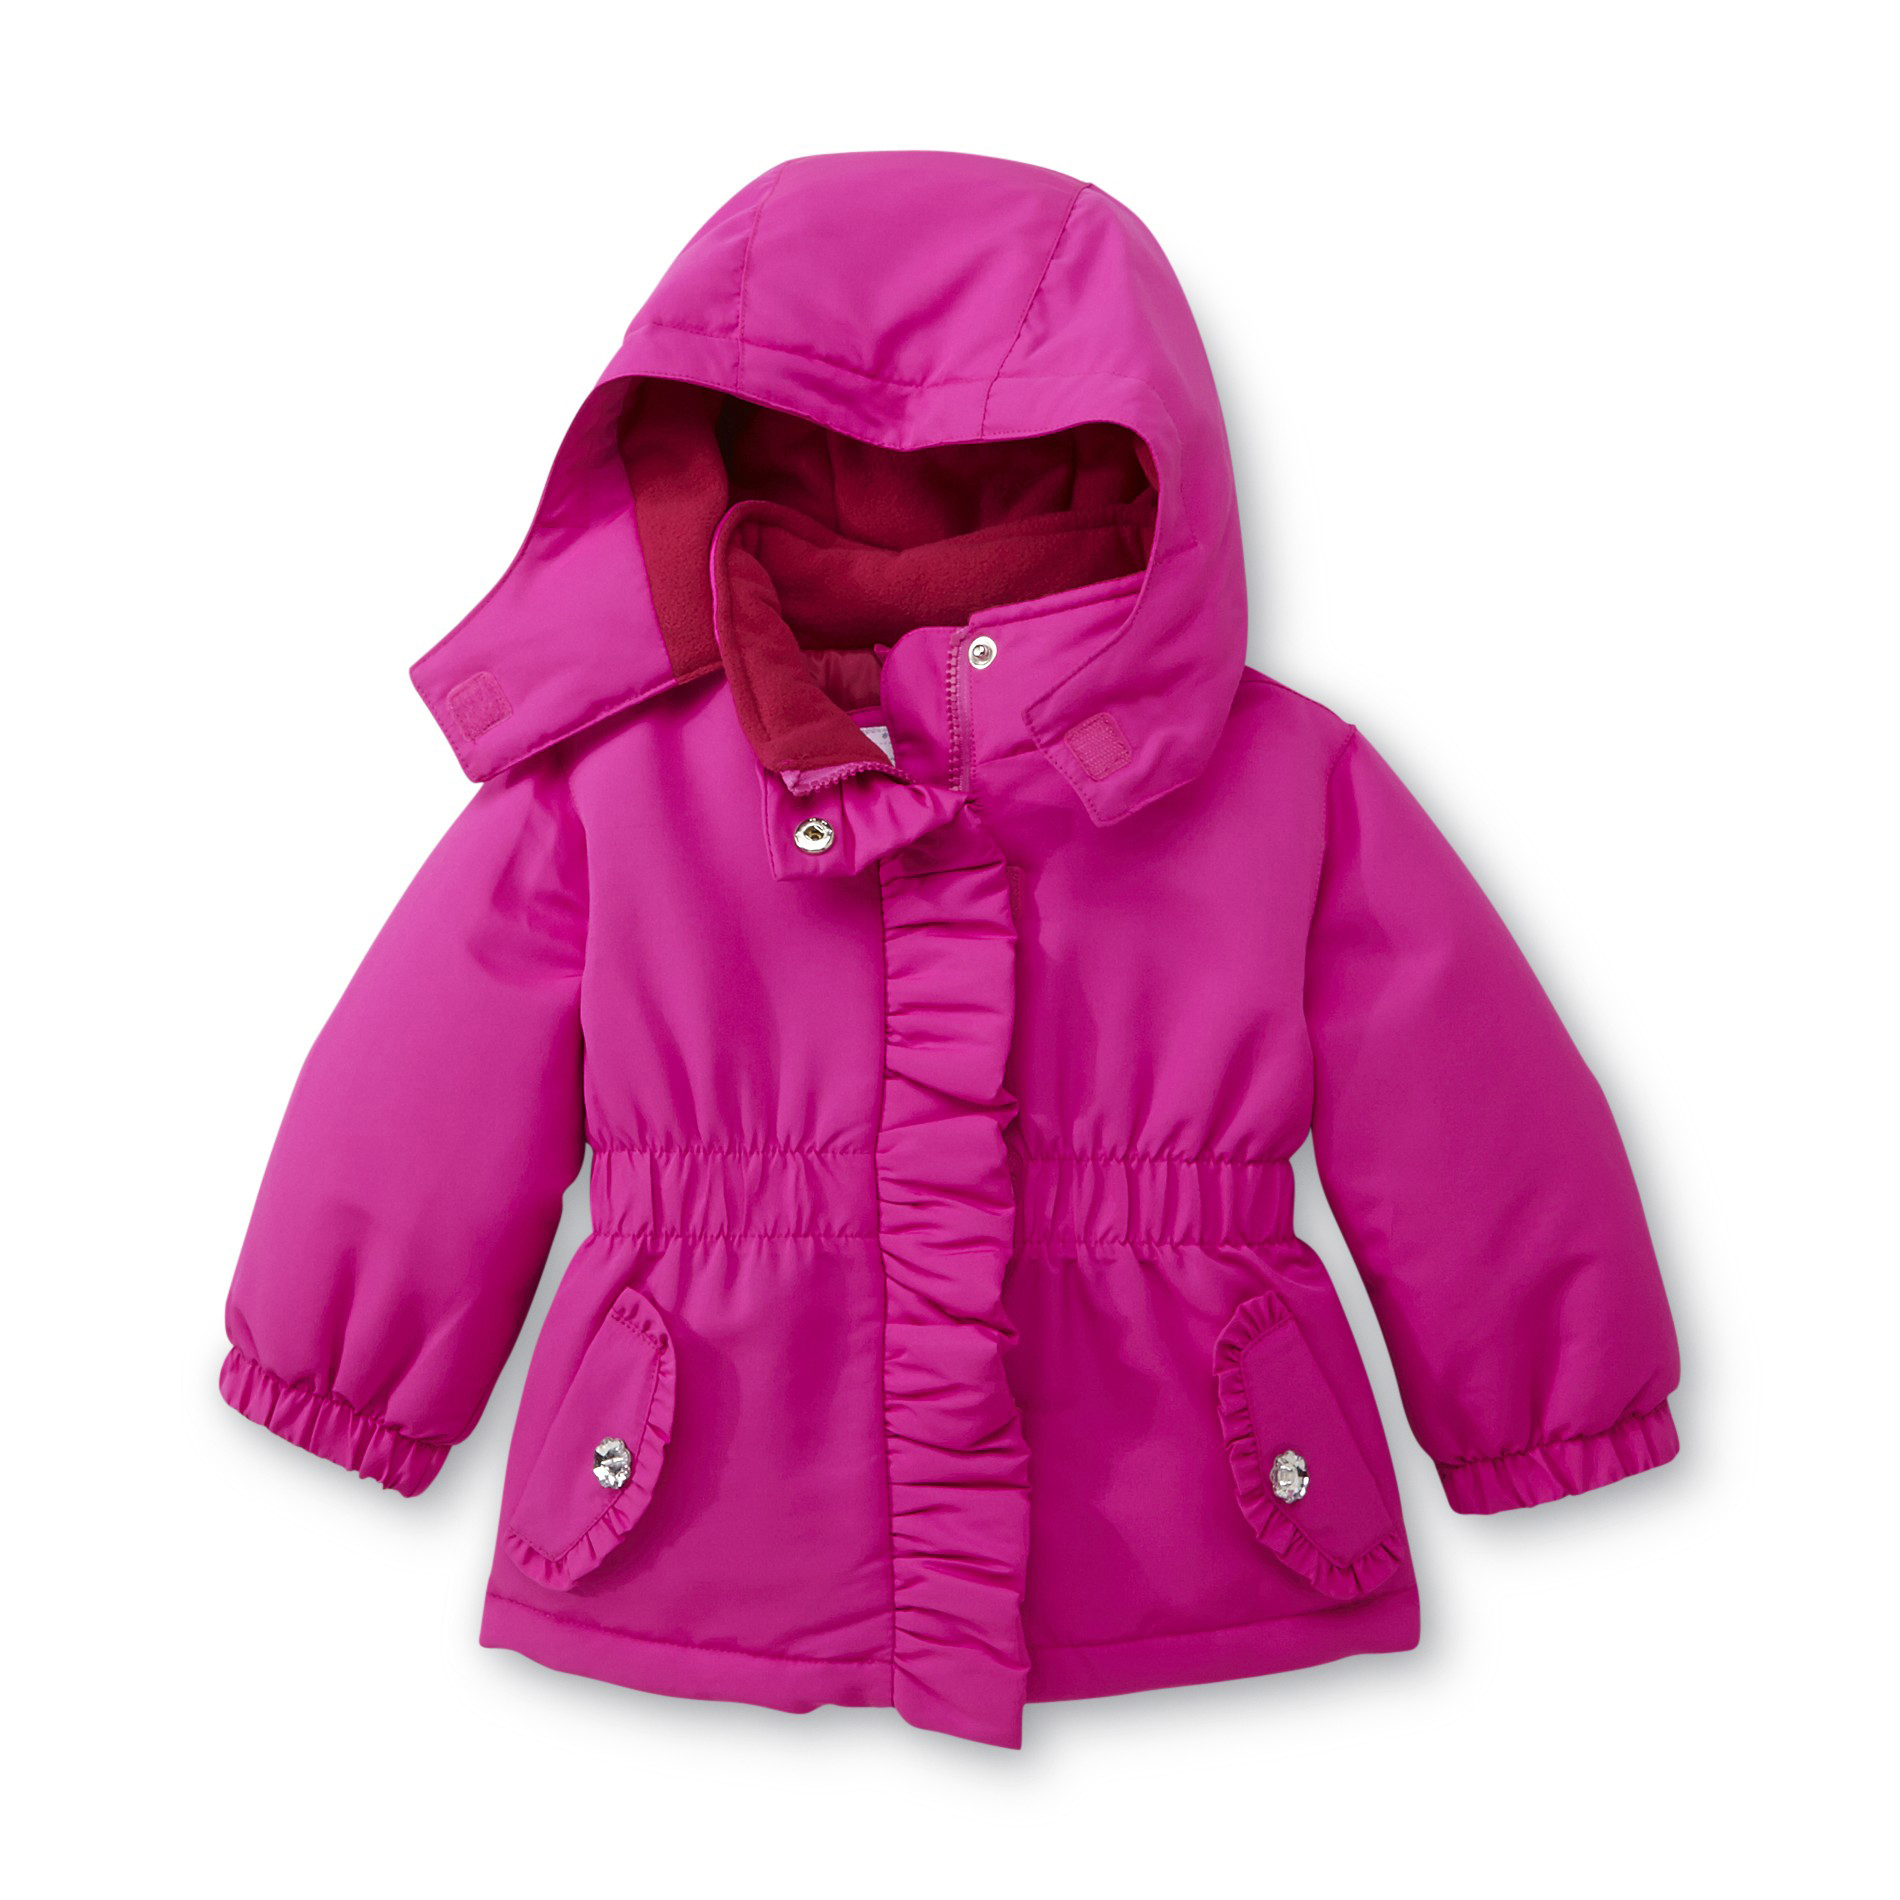 WonderKids Infant & Toddler Girl's Hooded Ski Jacket